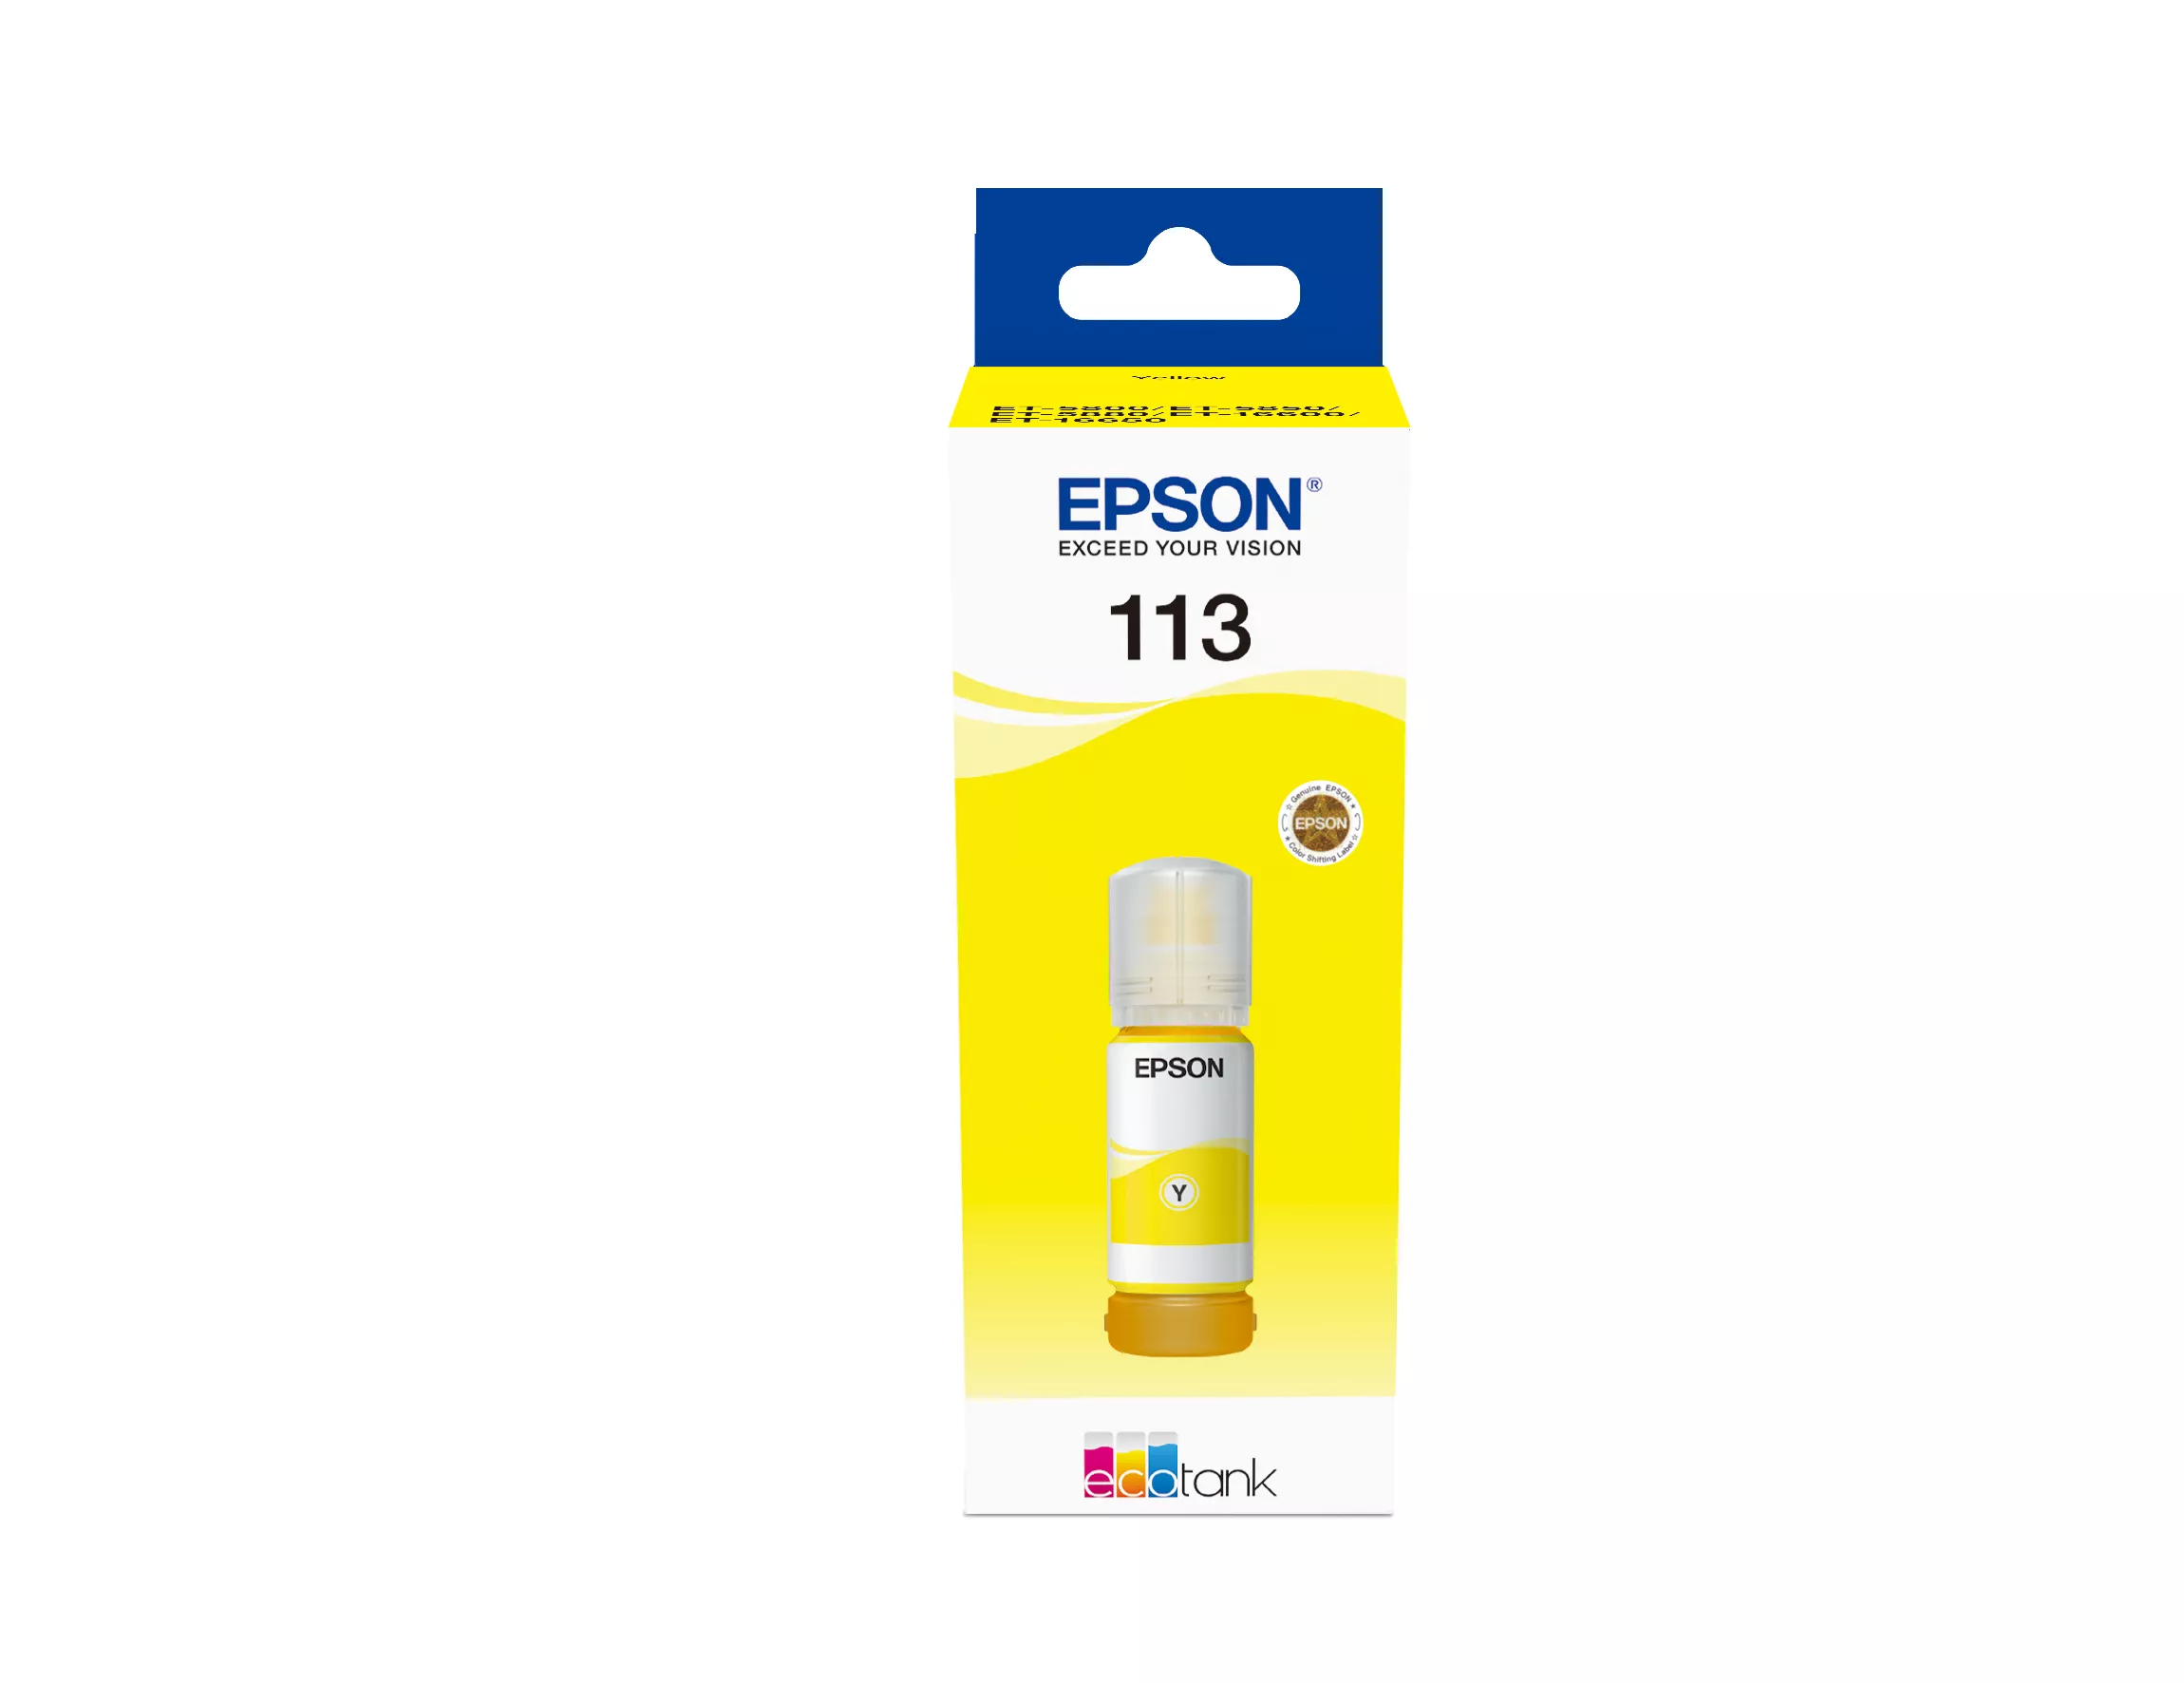 Achat EPSON 113 EcoTank Pigment Yellow ink bottle au meilleur prix